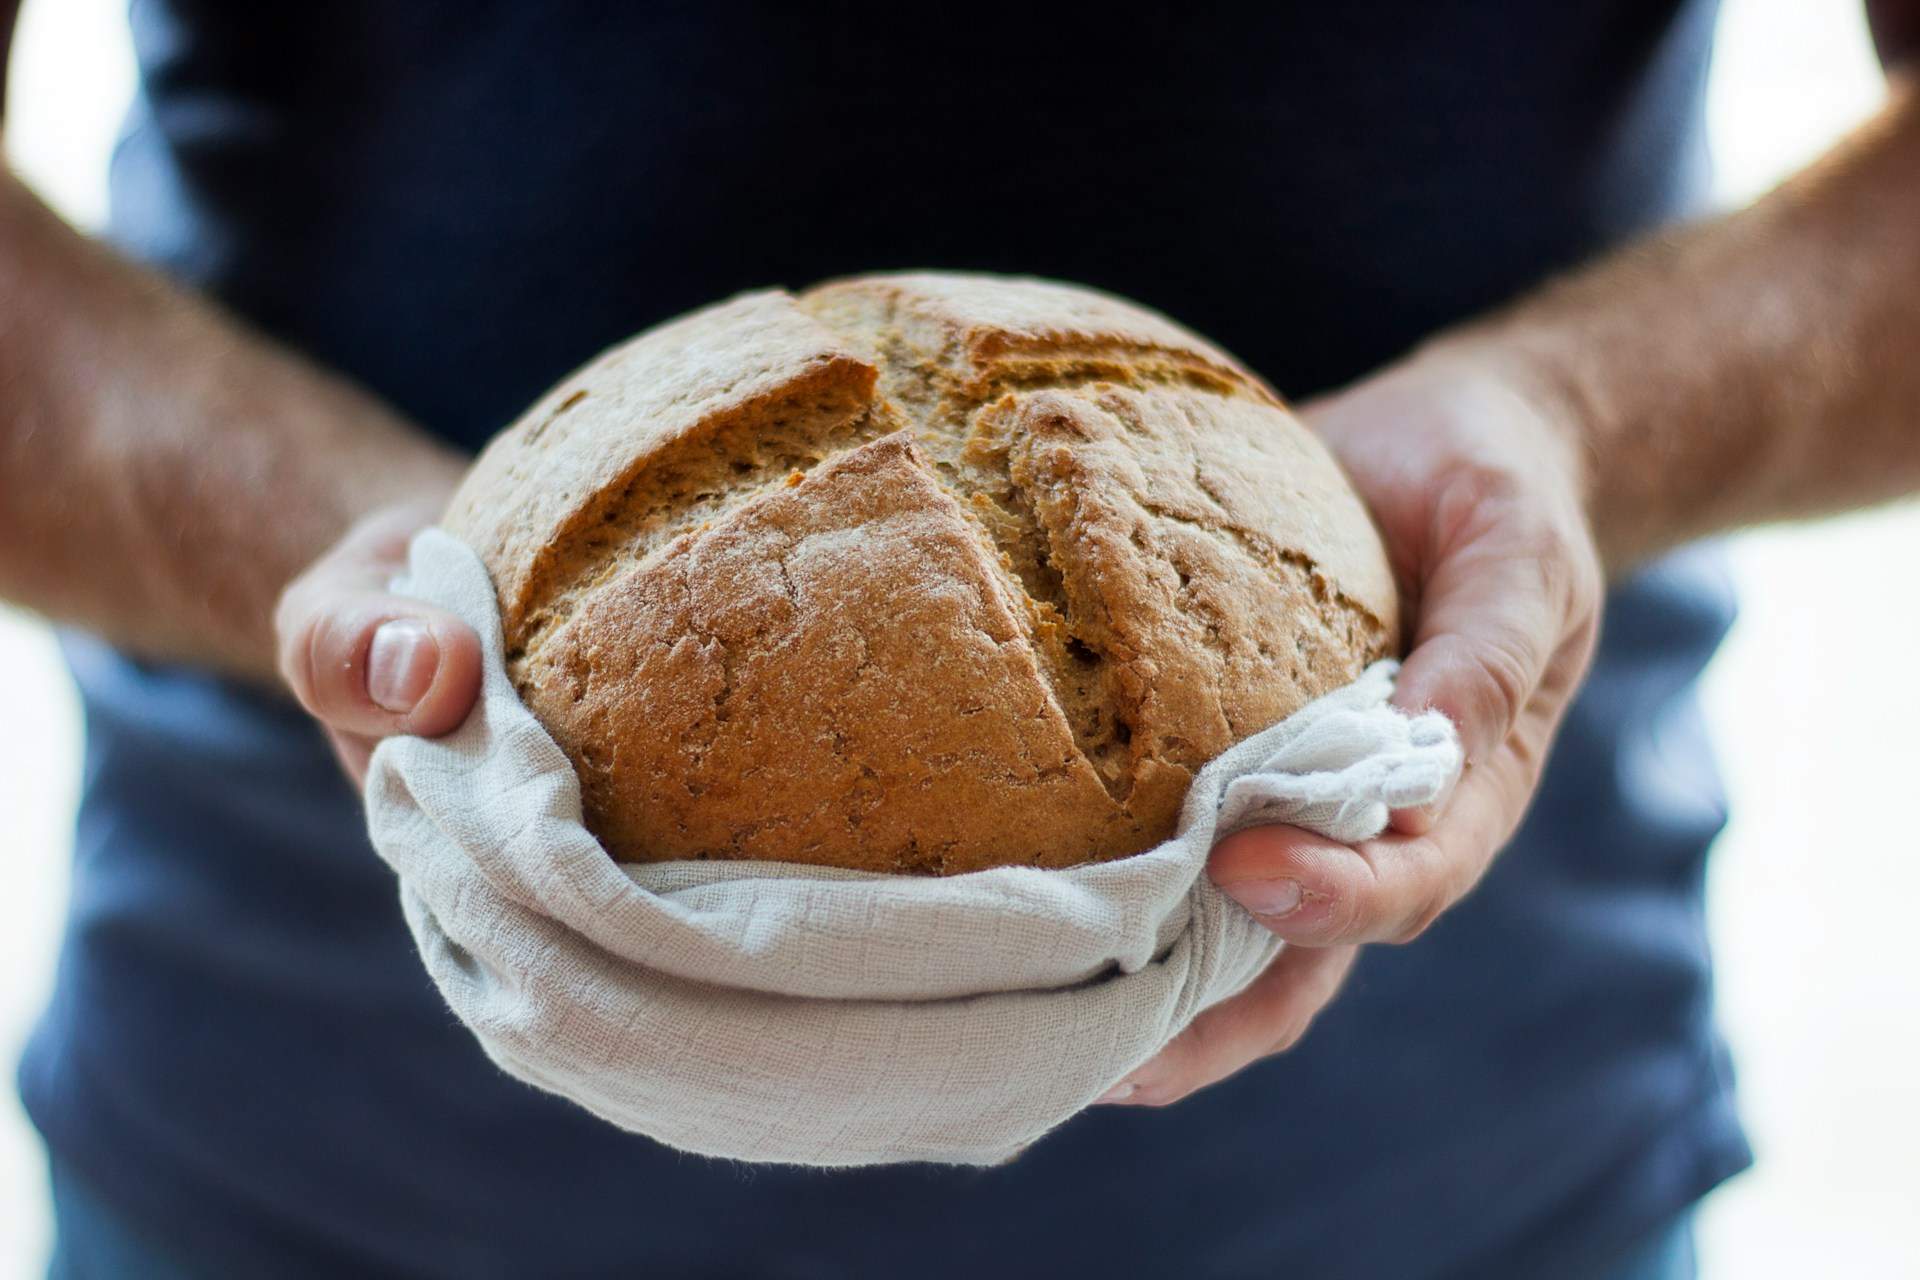 Fer pans en paella és possible: aquí tens la recepta de pa sense forn que et canviarà la vida